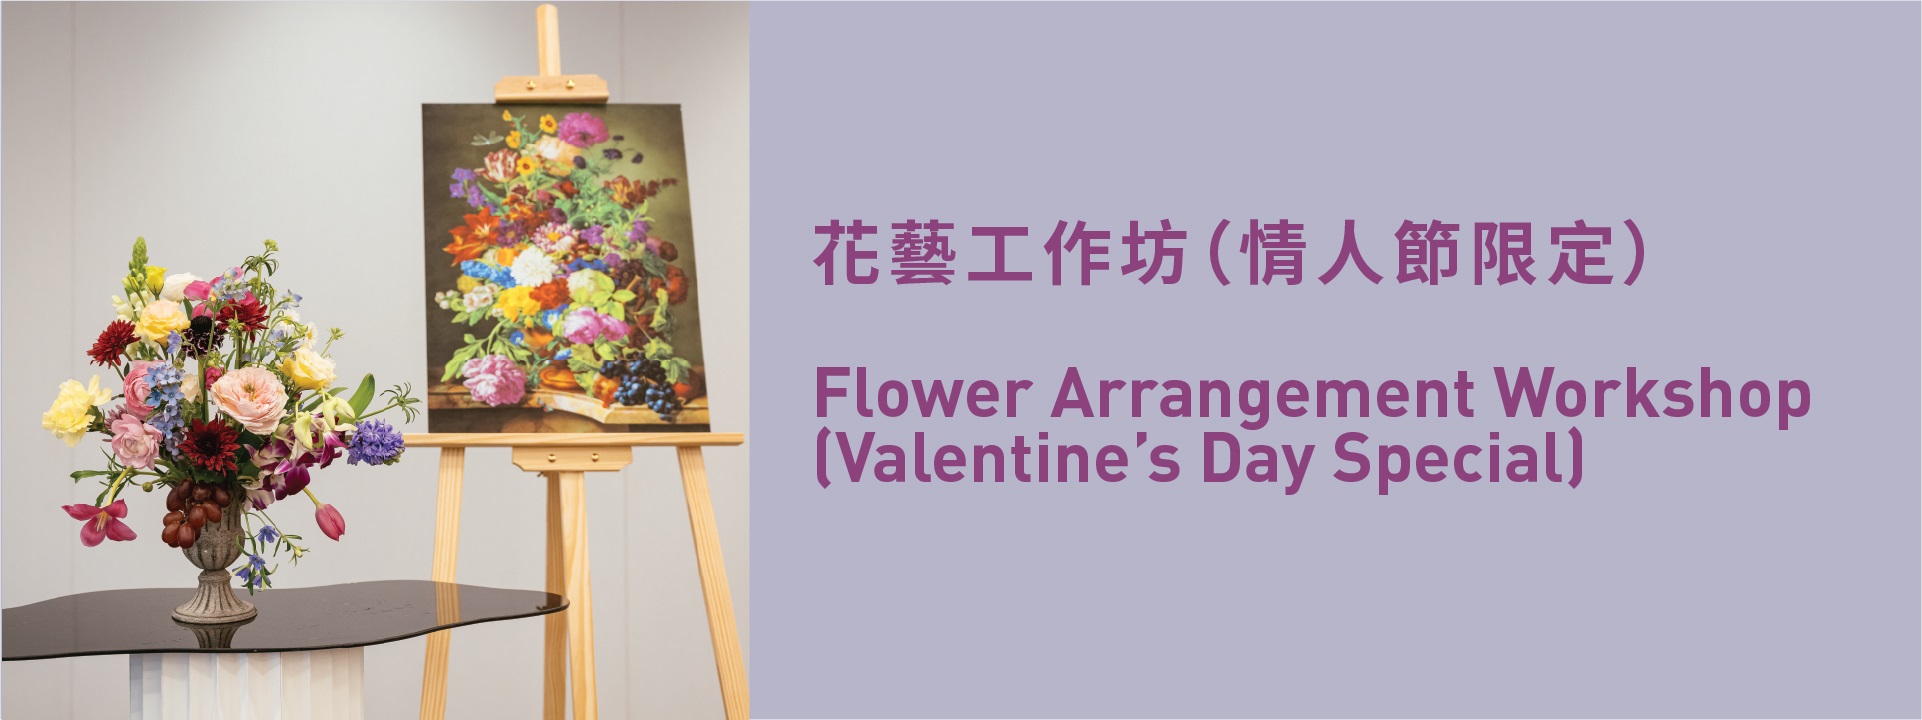 Flower Arrangement Workshop (Valentine’s Day Special) 